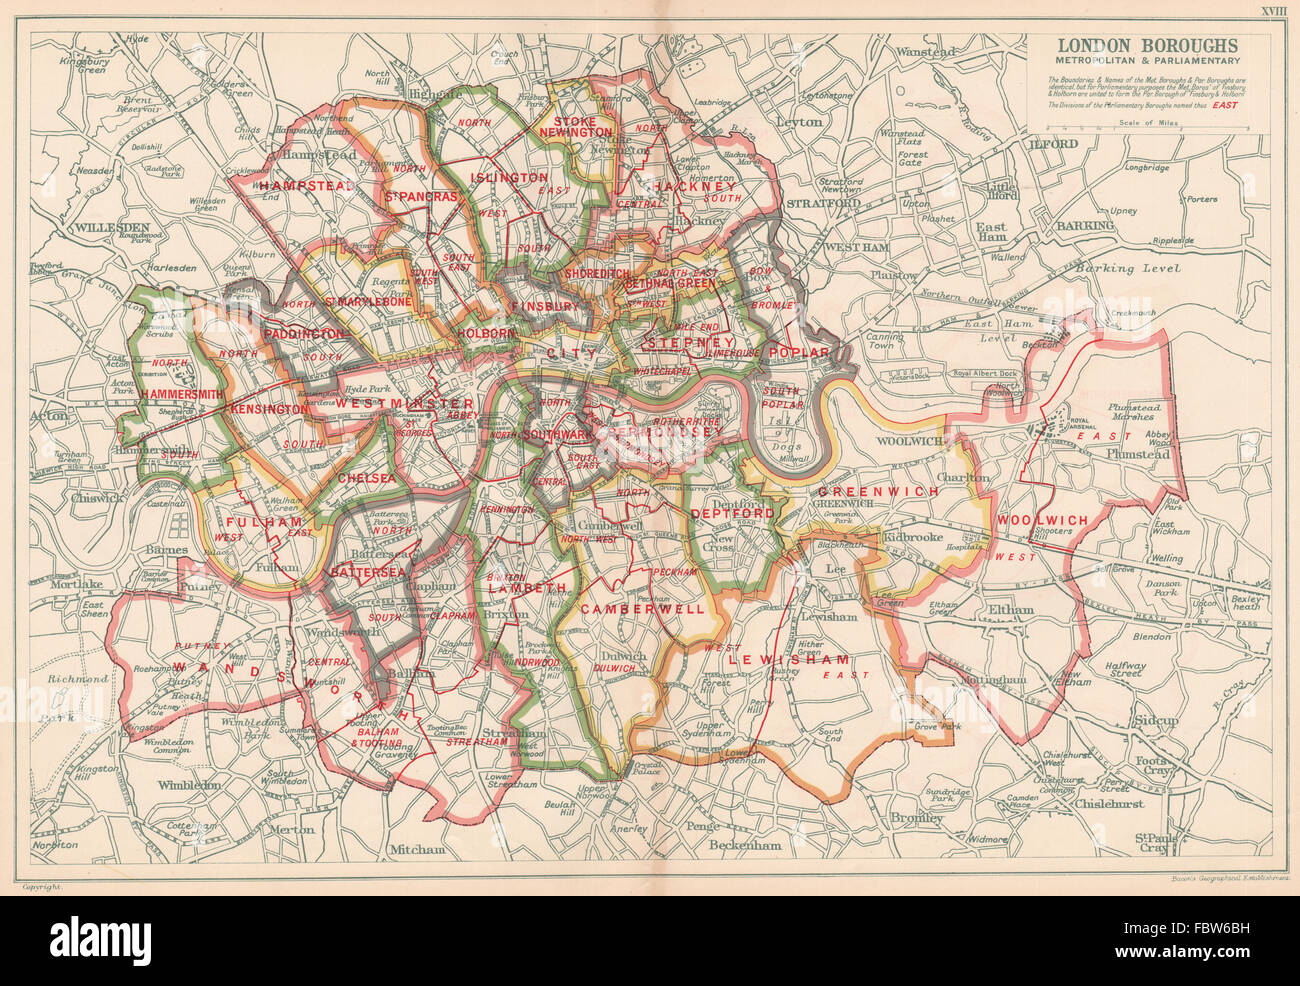 LONDONER STADTBEZIRKEN. Metropolitan & parlamentarische. Consistiuencies. Speck, 1927-Karte Stockfoto